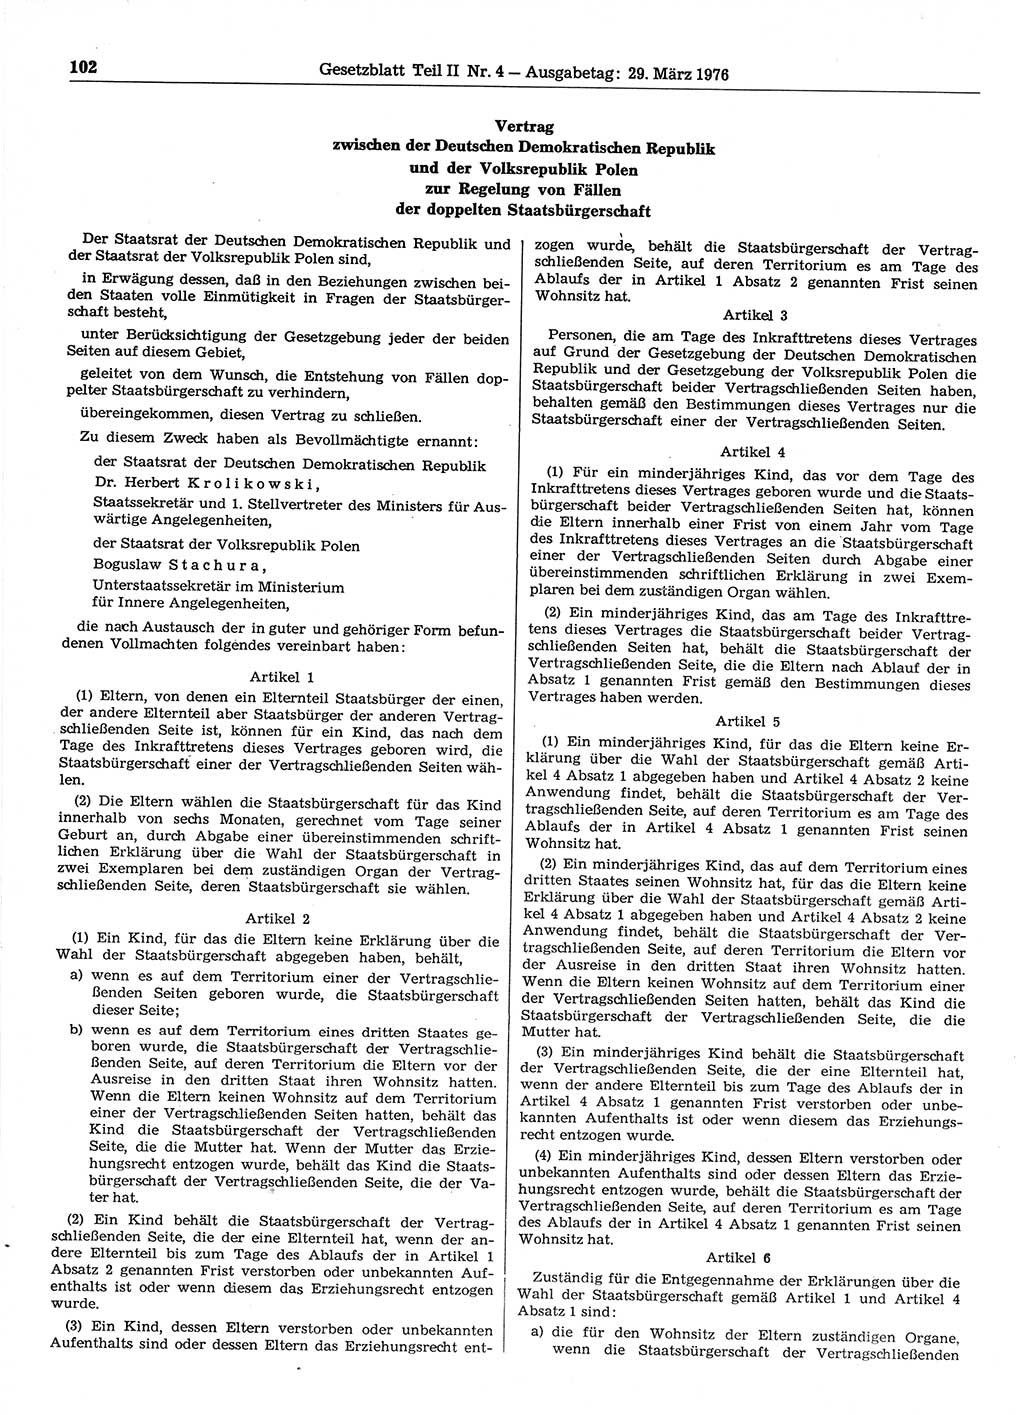 Gesetzblatt (GBl.) der Deutschen Demokratischen Republik (DDR) Teil ⅠⅠ 1976, Seite 102 (GBl. DDR ⅠⅠ 1976, S. 102)